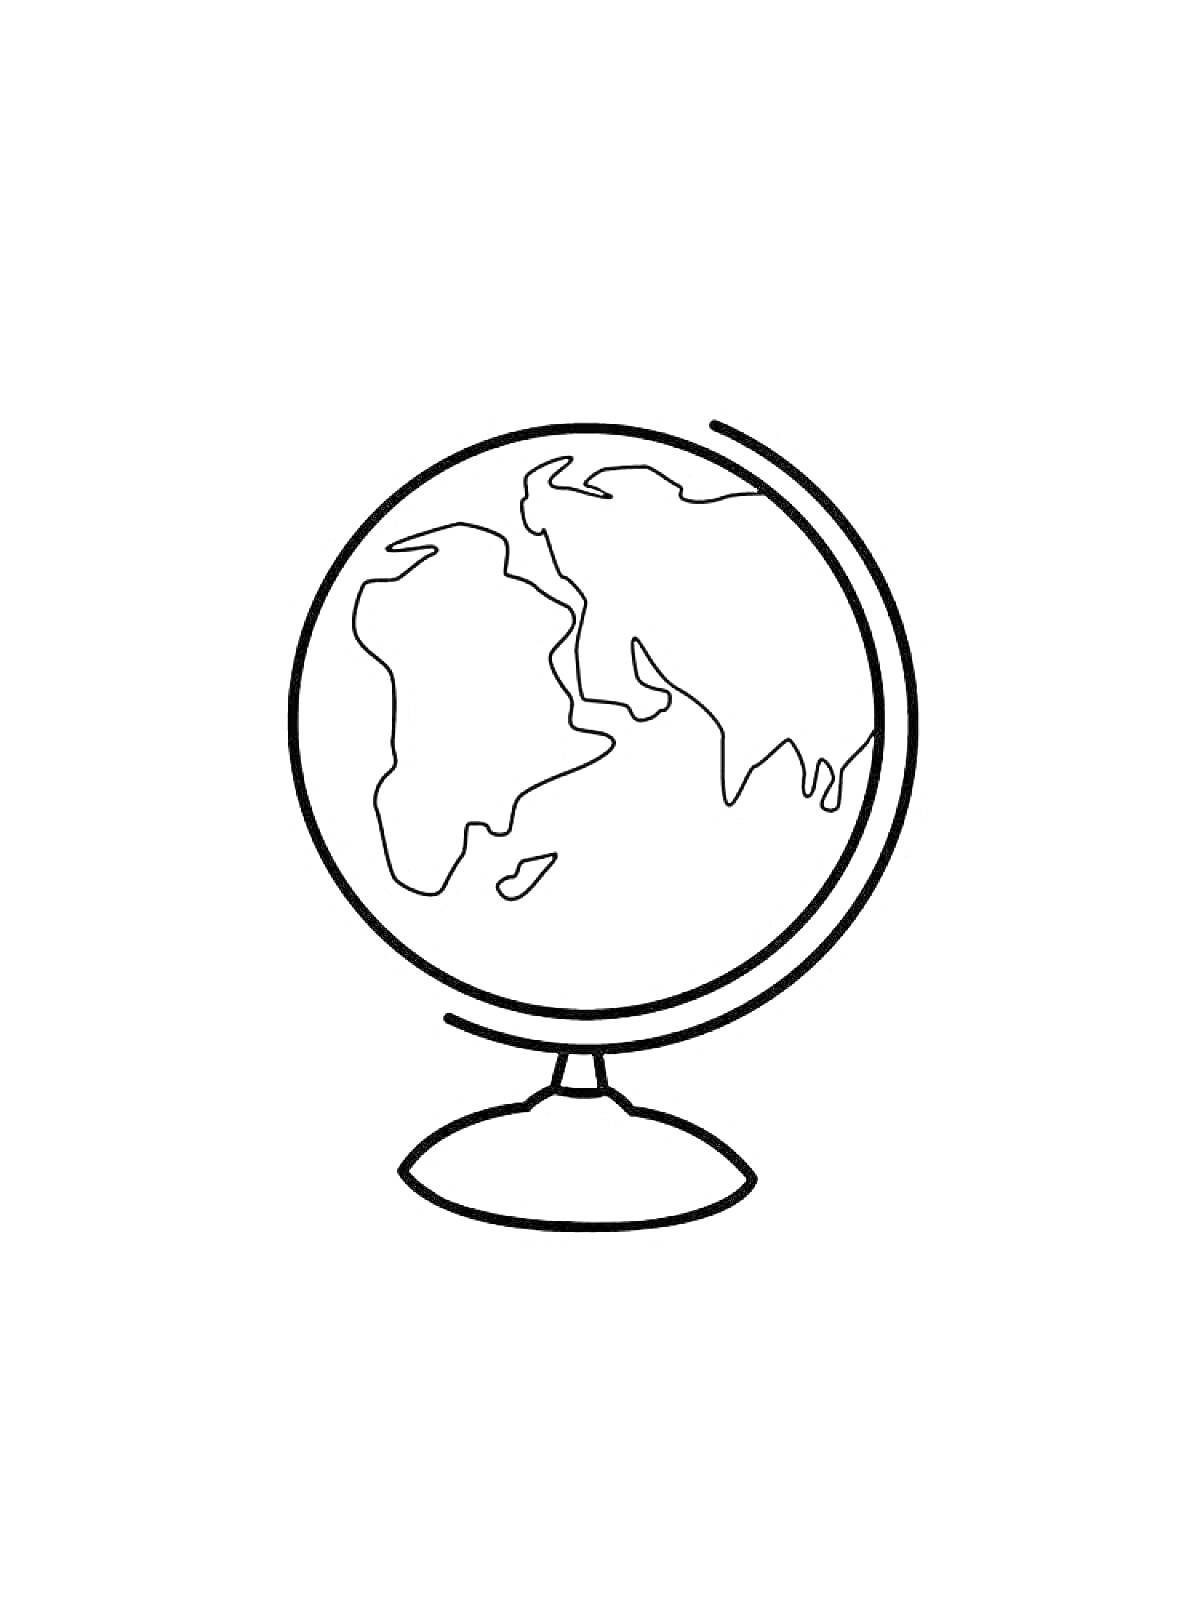 Раскраска Глобус с контуром континентов на подставке